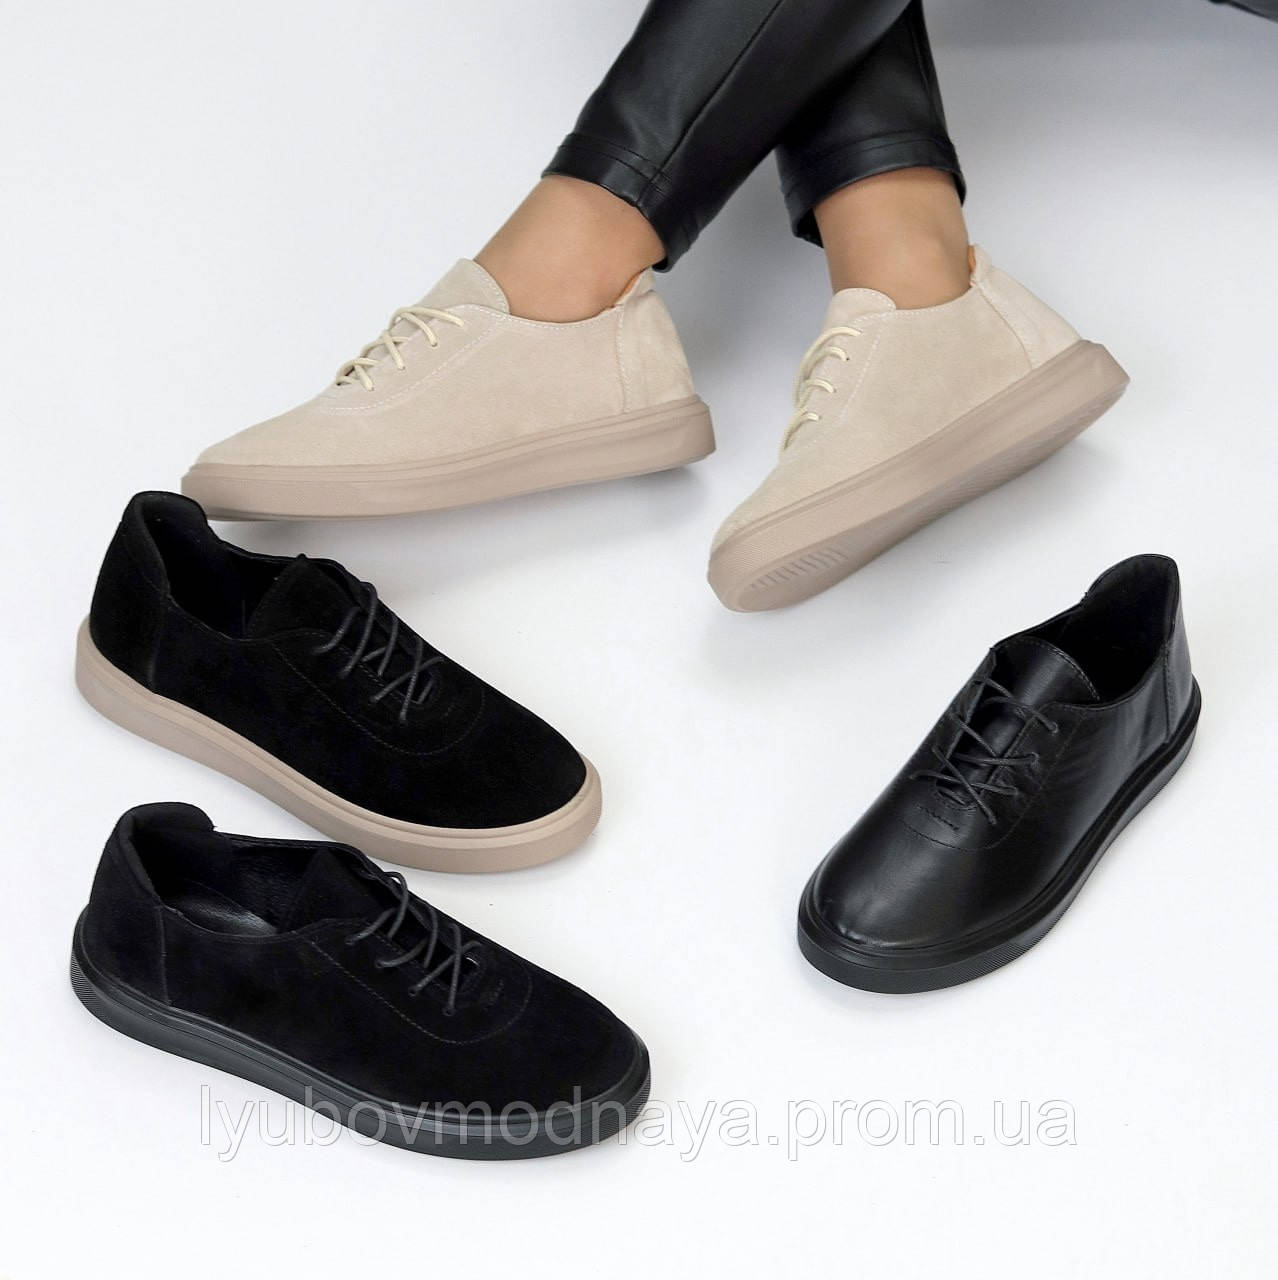 Чорні та бежеві шкіряні та замшеві жіночі туфлі на шнурках низькому ходу